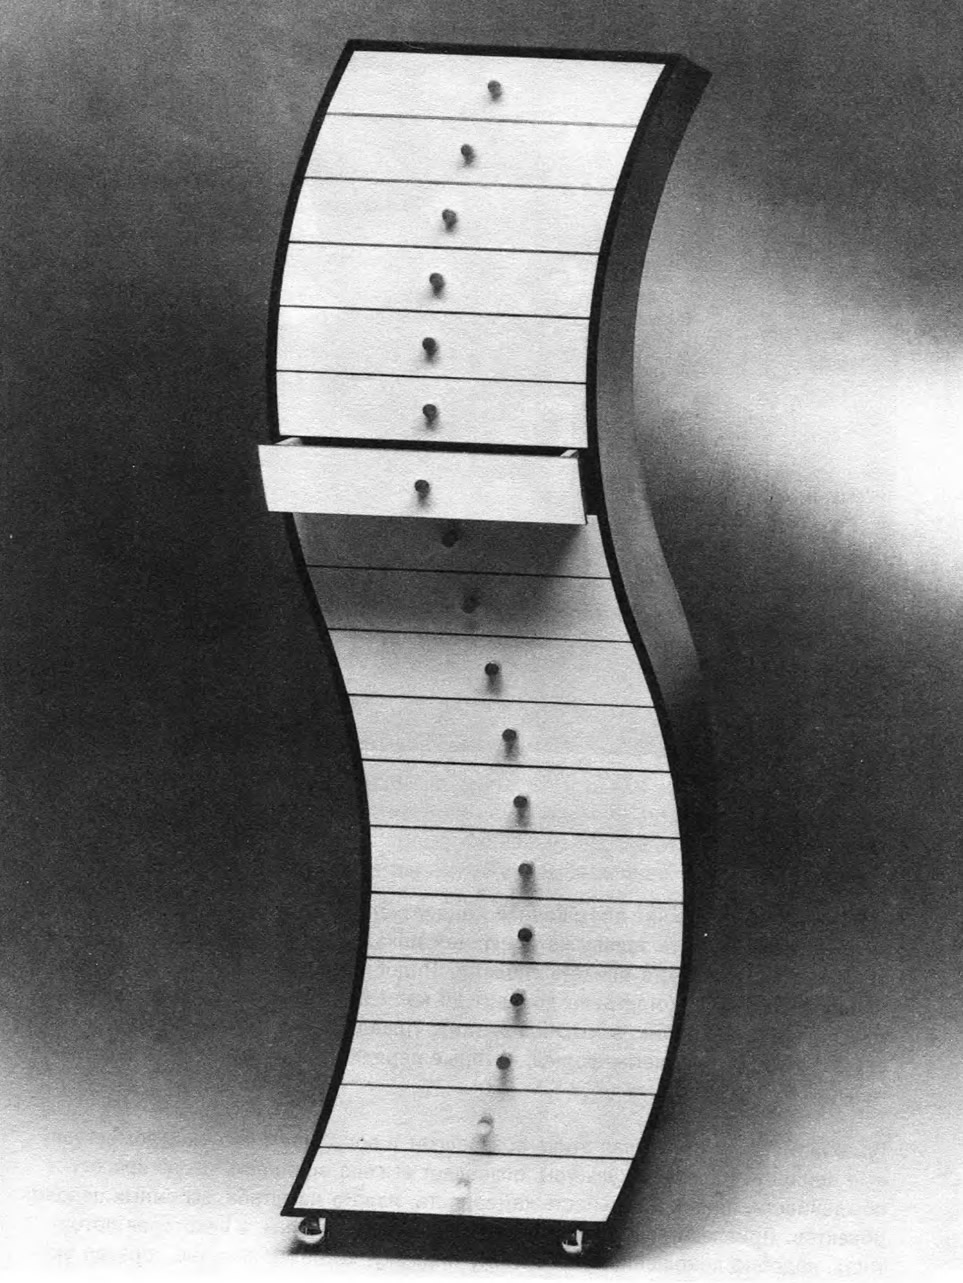 Шкаф криволинейный. Ш. Куромата, 1970